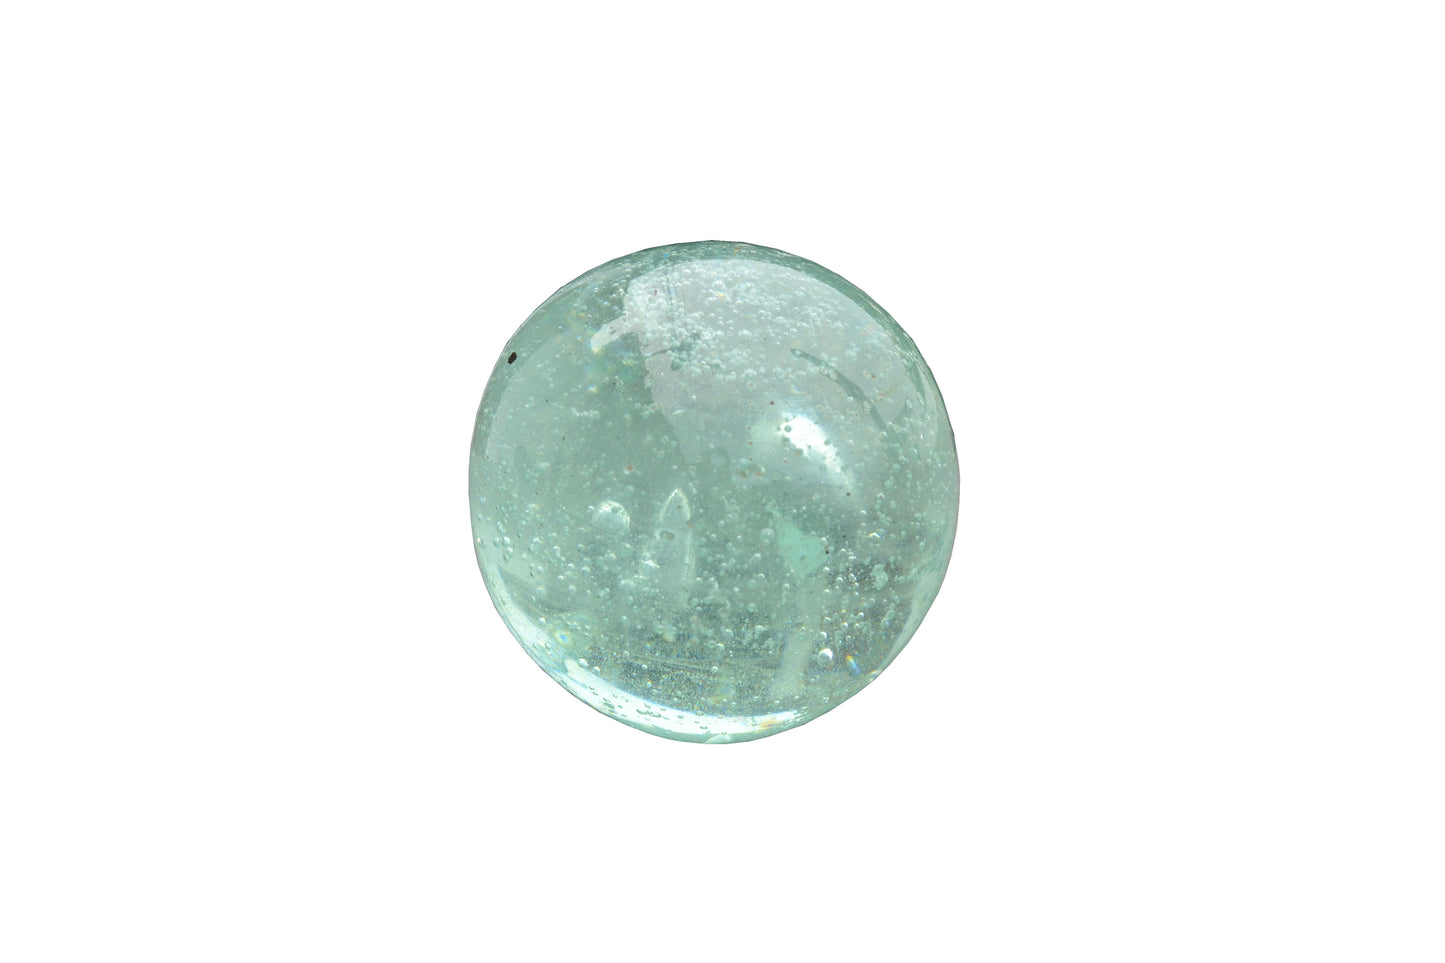 Glass apple ball